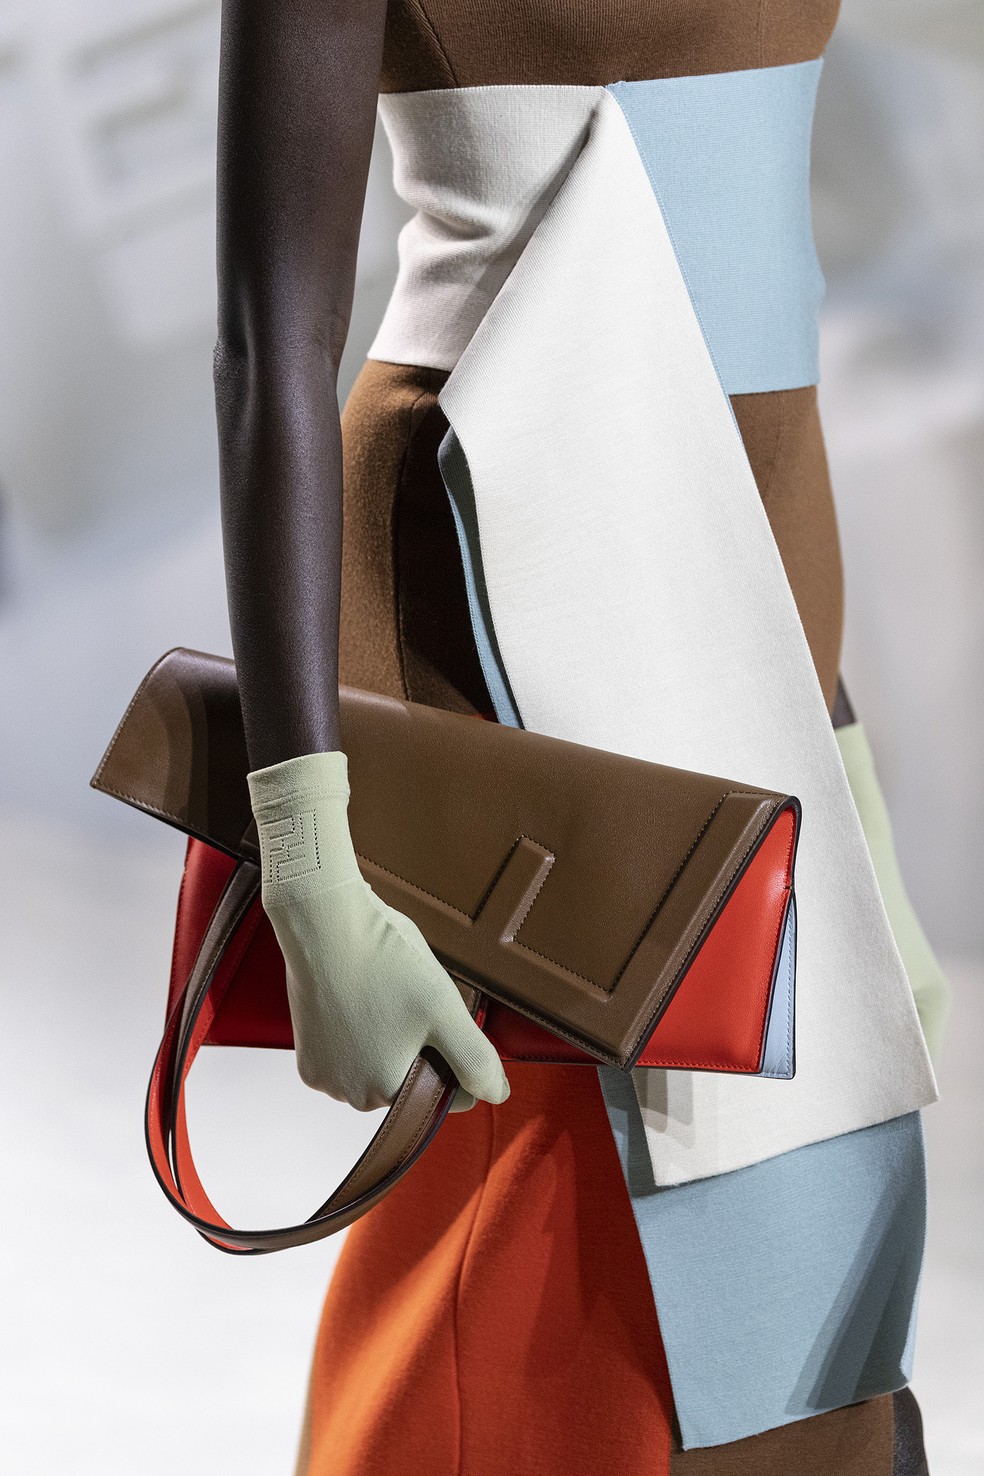 Moda: novos modelos de bolsas da Fendi chegam nas lojas do Brasil